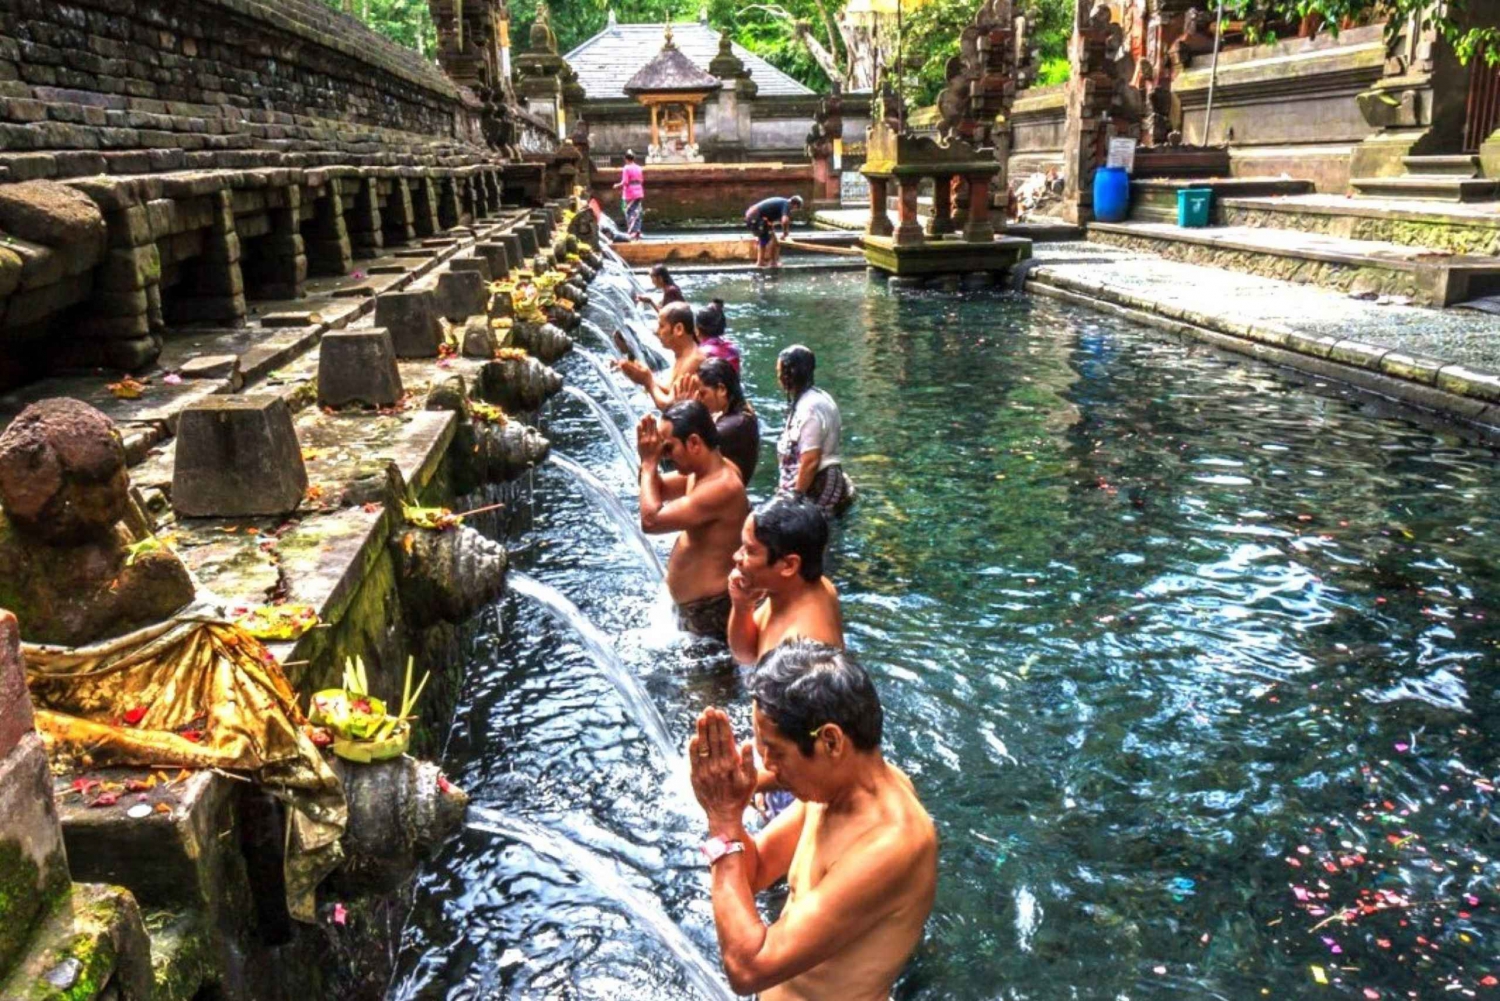 Ubud Waterval, Tegalalang Rijstterras & Tirta empul tempel